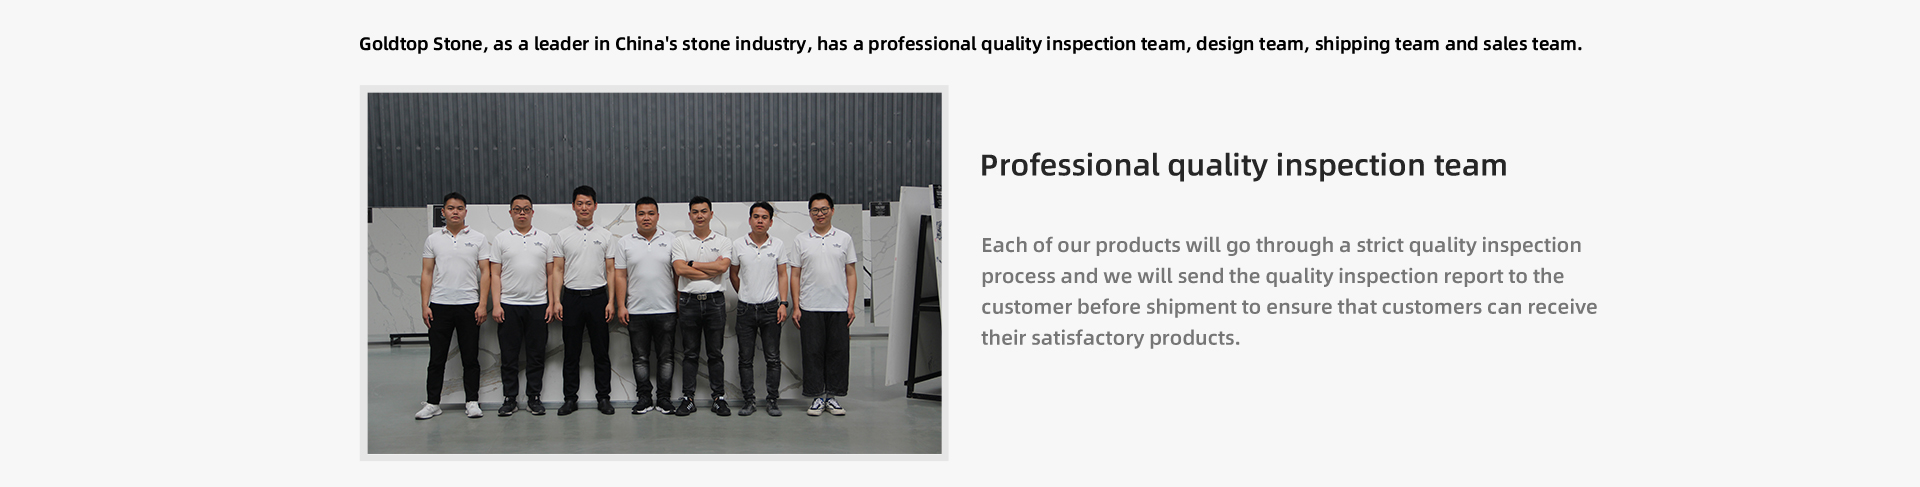 Cada uno de nuestros productos pasará por un estricto proceso de inspección de calidad y enviaremos el informe de inspección de calidad al cliente antes del envío para garantizar que los clientes puedan recibir sus productos satisfactorios.